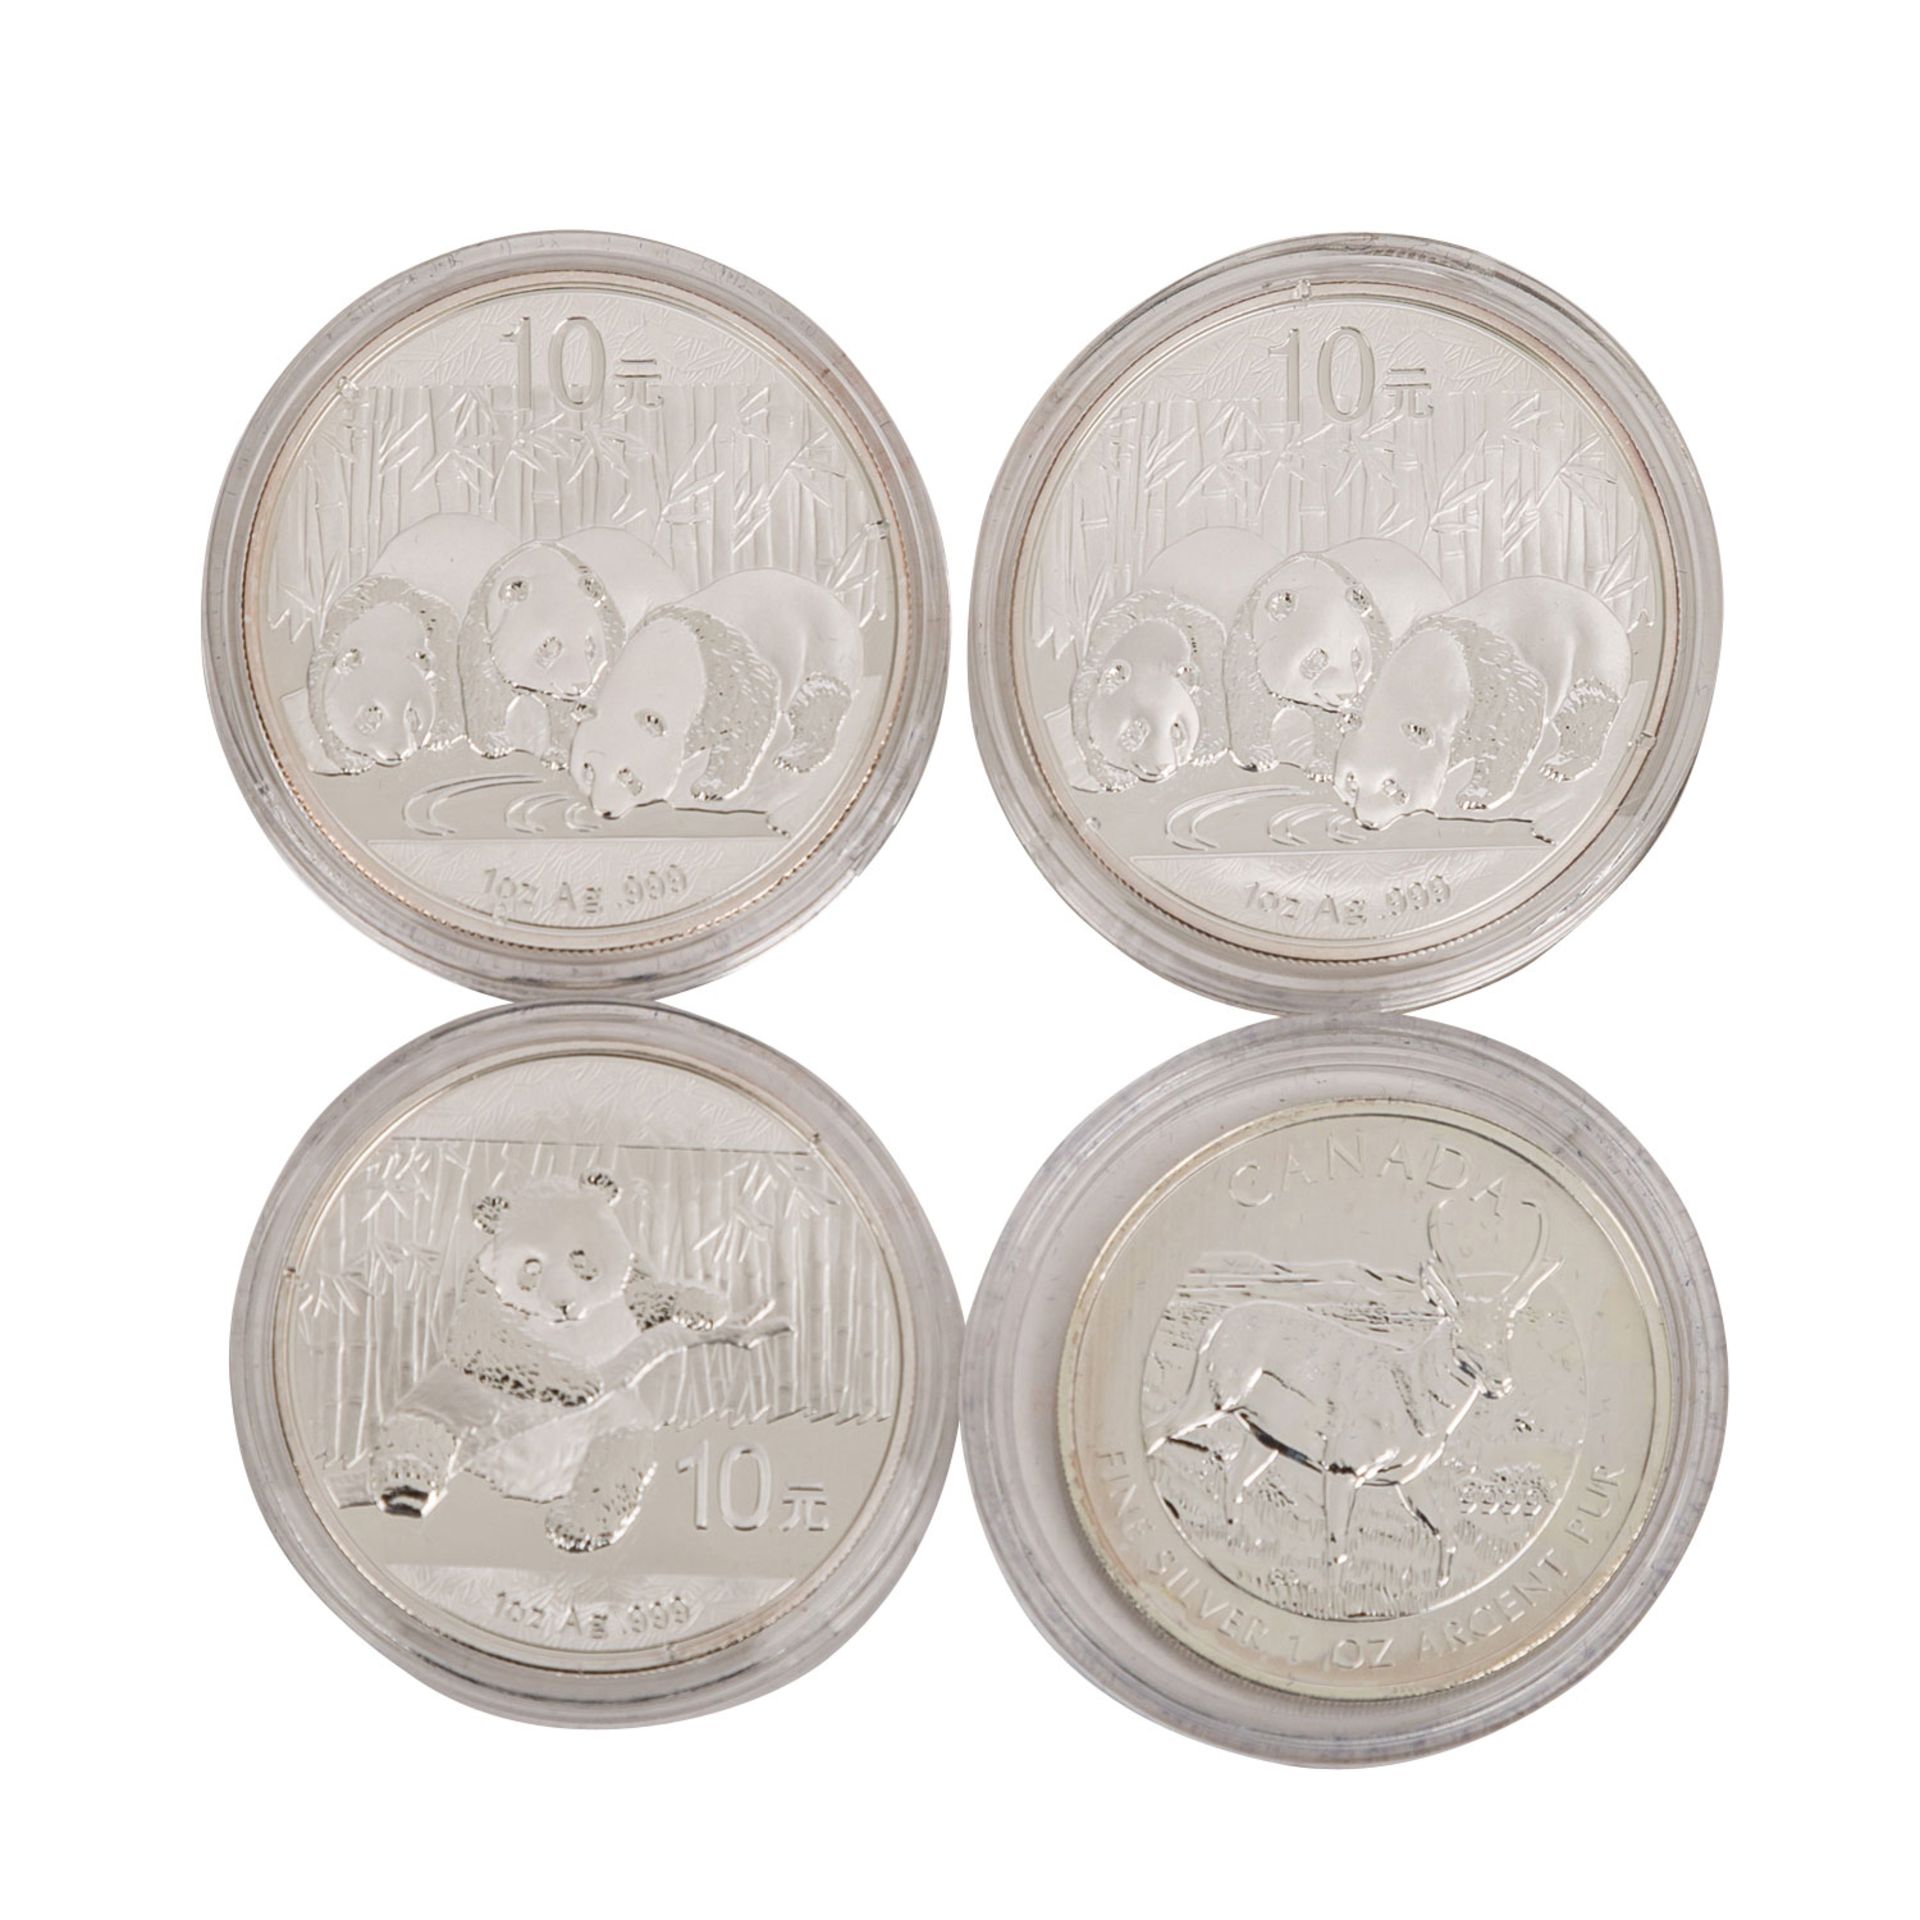 SILBERUNZEN - Holzbox mit 34 Münzen,davon 32 Unzen, 1 weitere Unze als Medaille sowie 1/2 Unze - Bild 4 aus 4